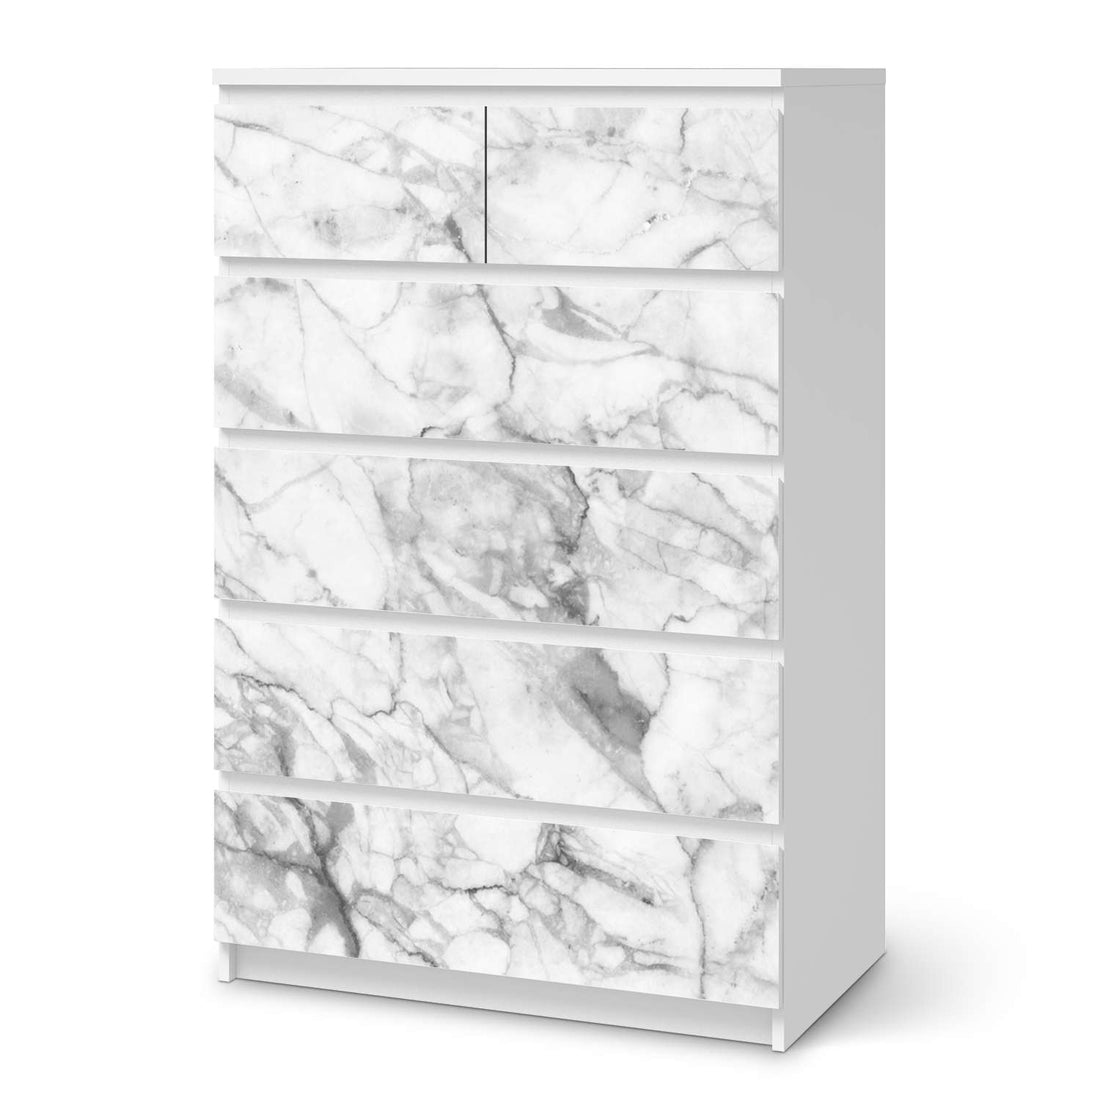 Möbel Klebefolie Marmor weiß - IKEA Malm Kommode 6 Schubladen (hoch)  - weiss